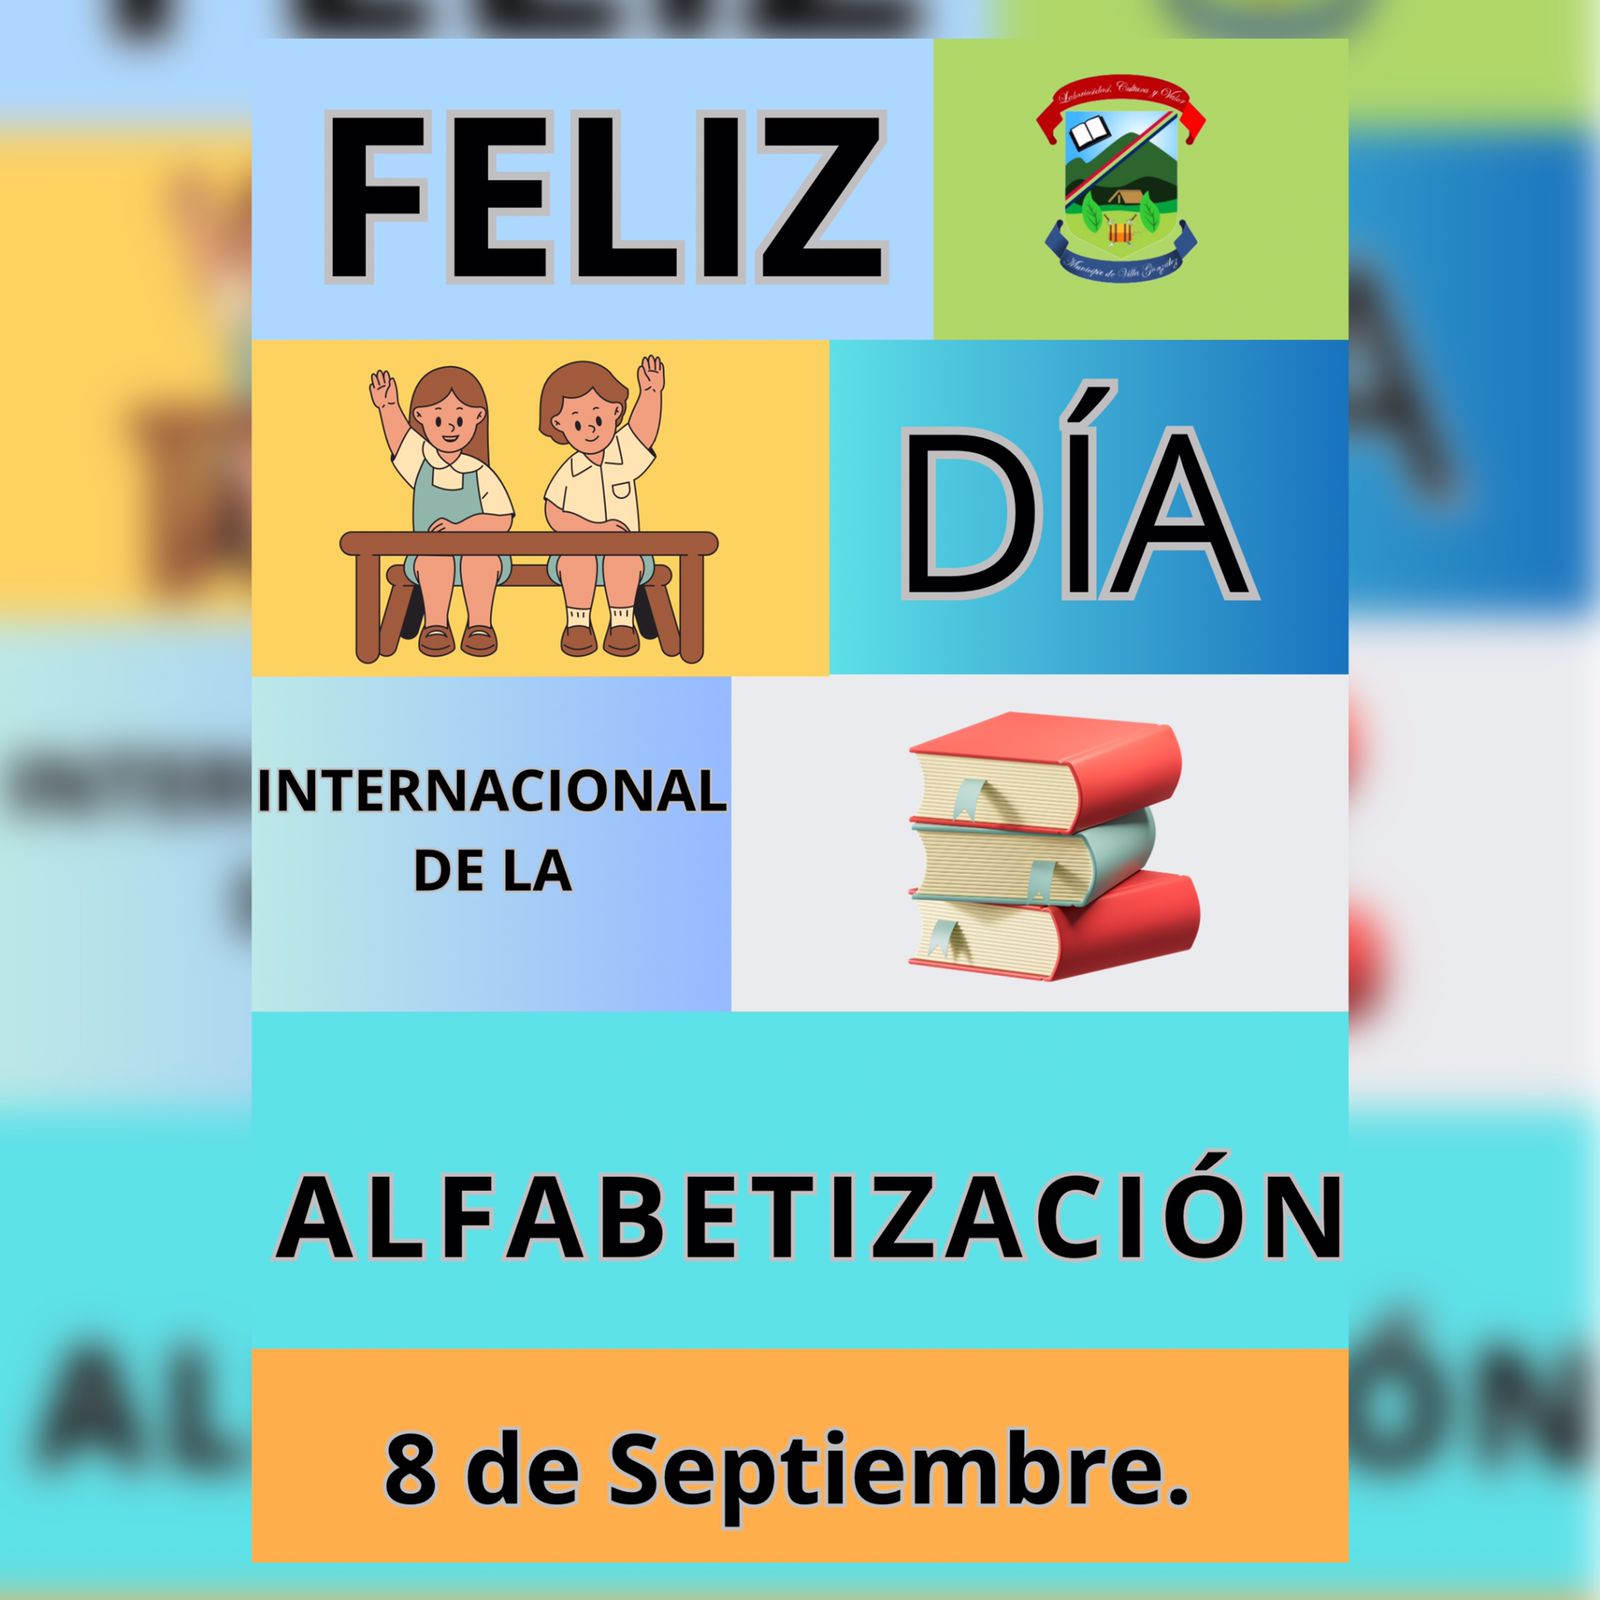 8 de Septiembre, día internacional de la Alfabetización.